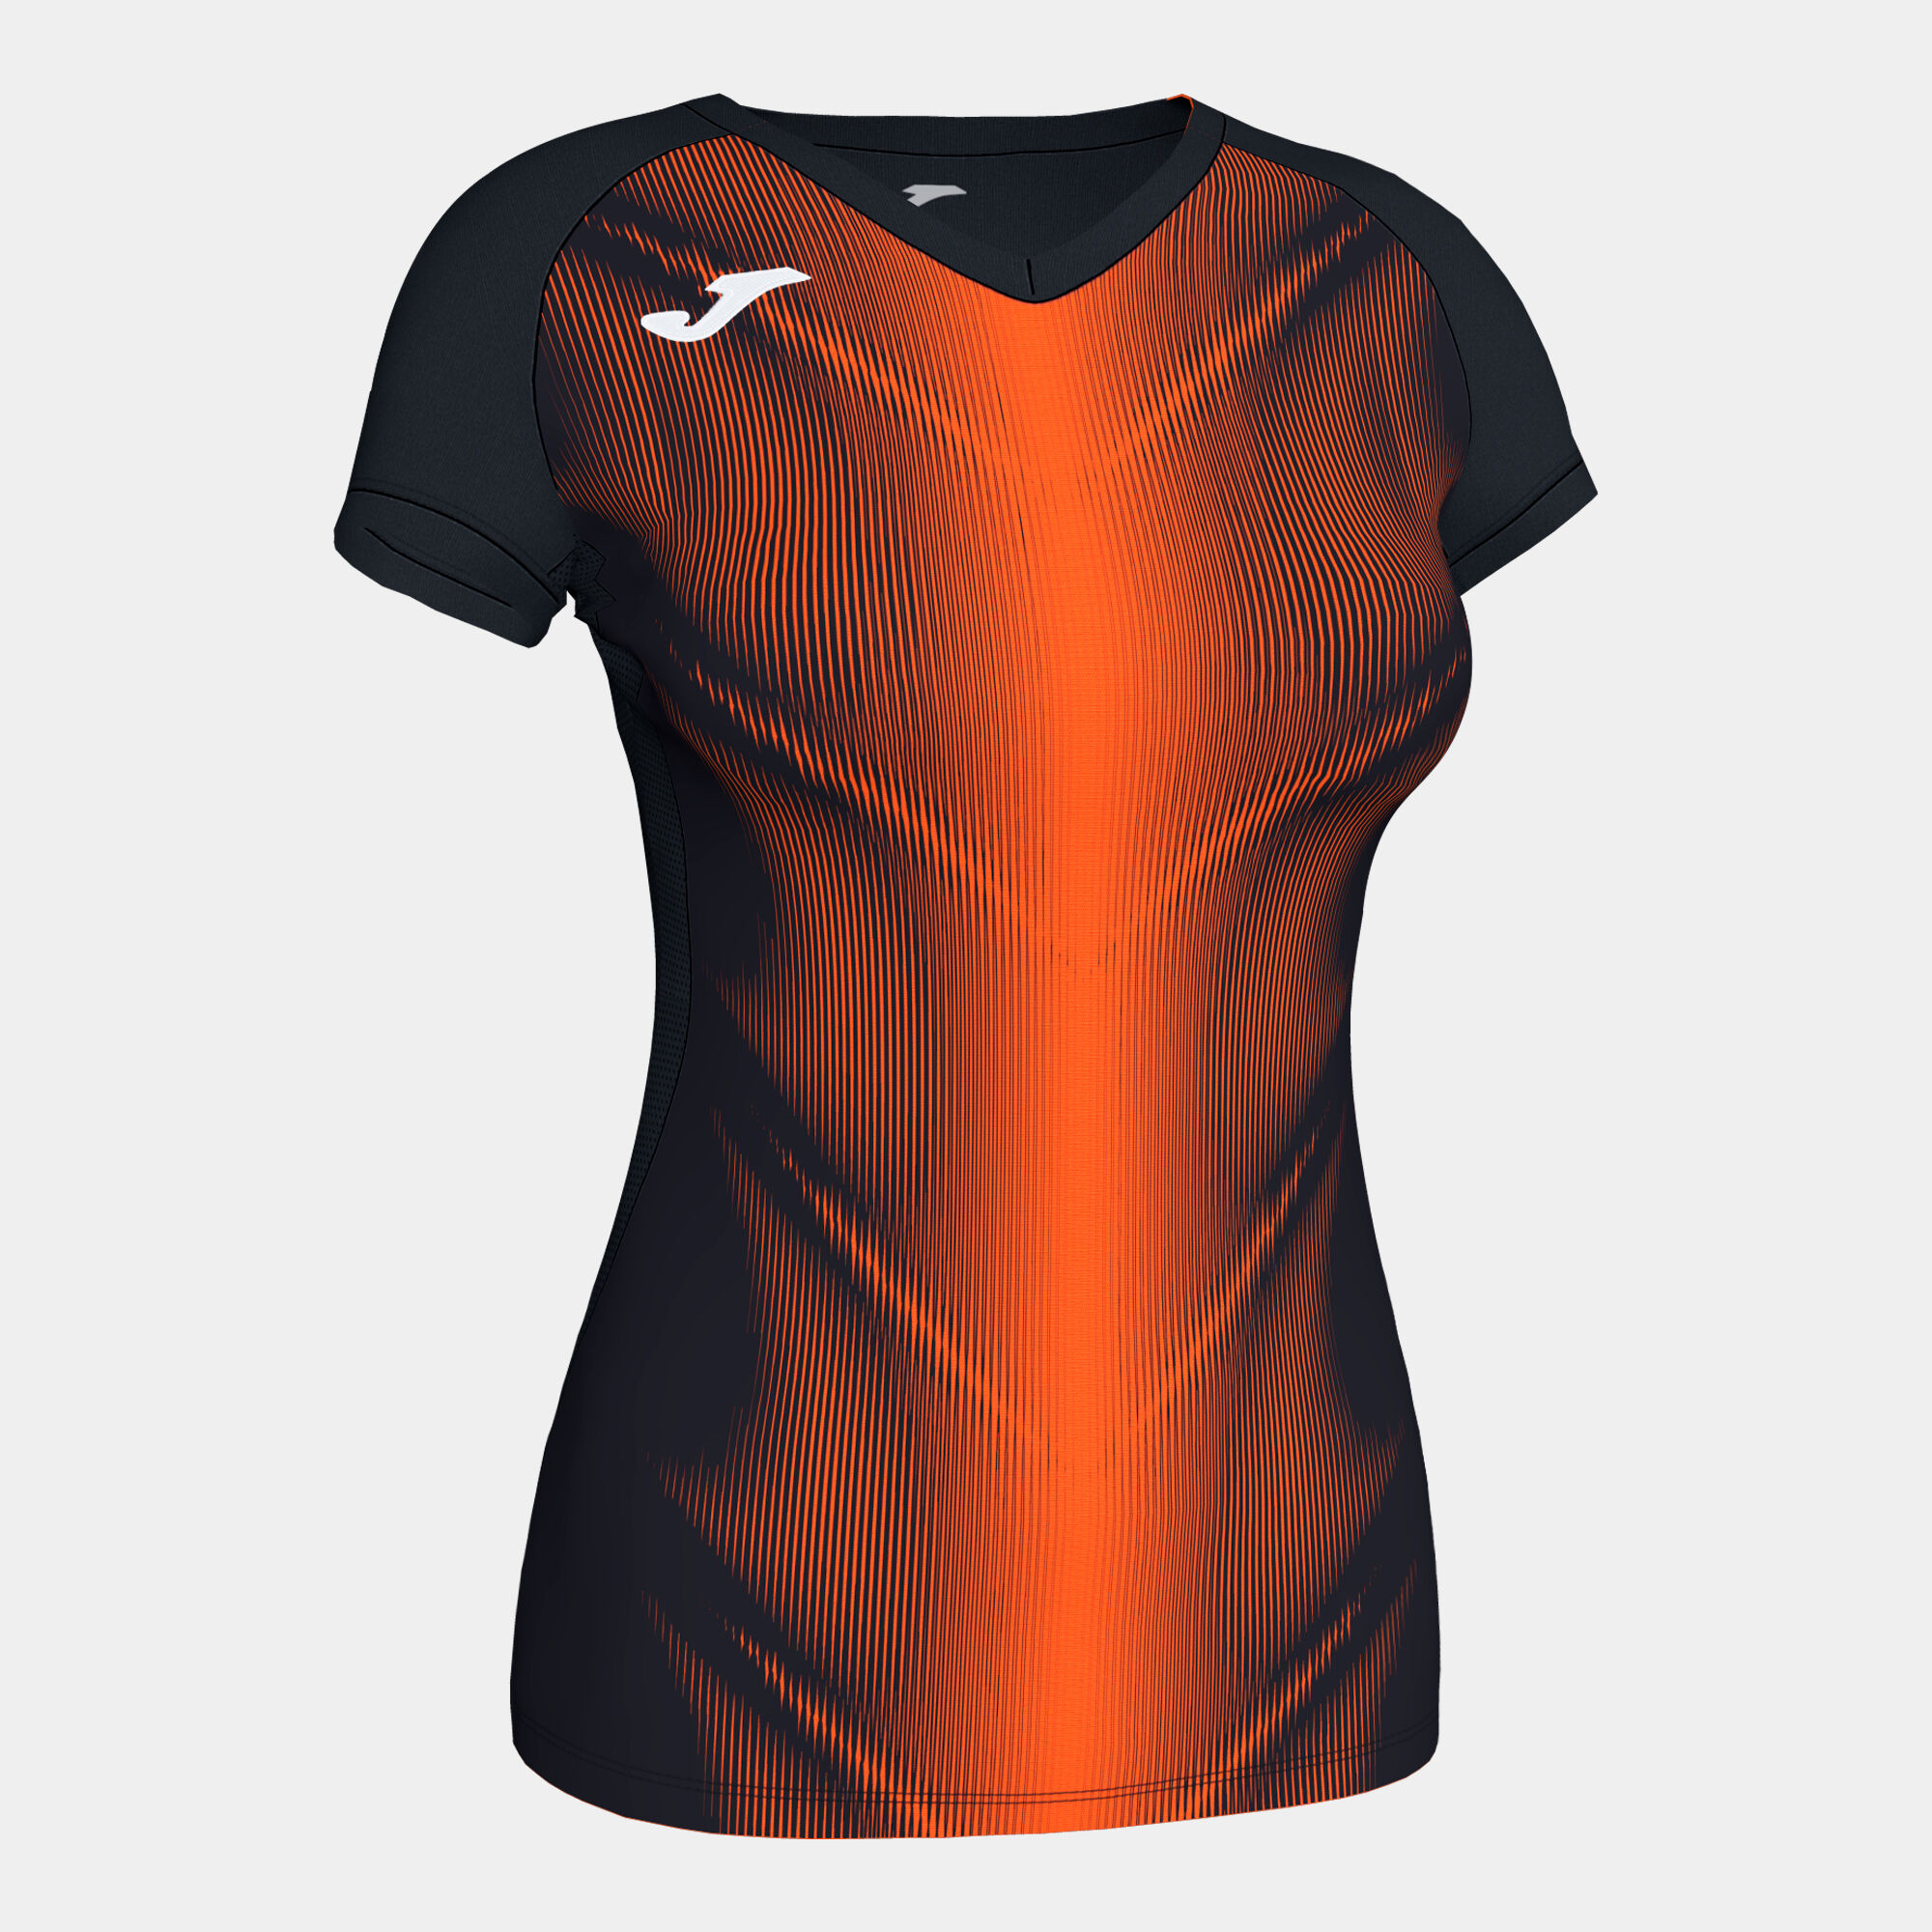 Shirt short sleeve woman Olimpia black orange